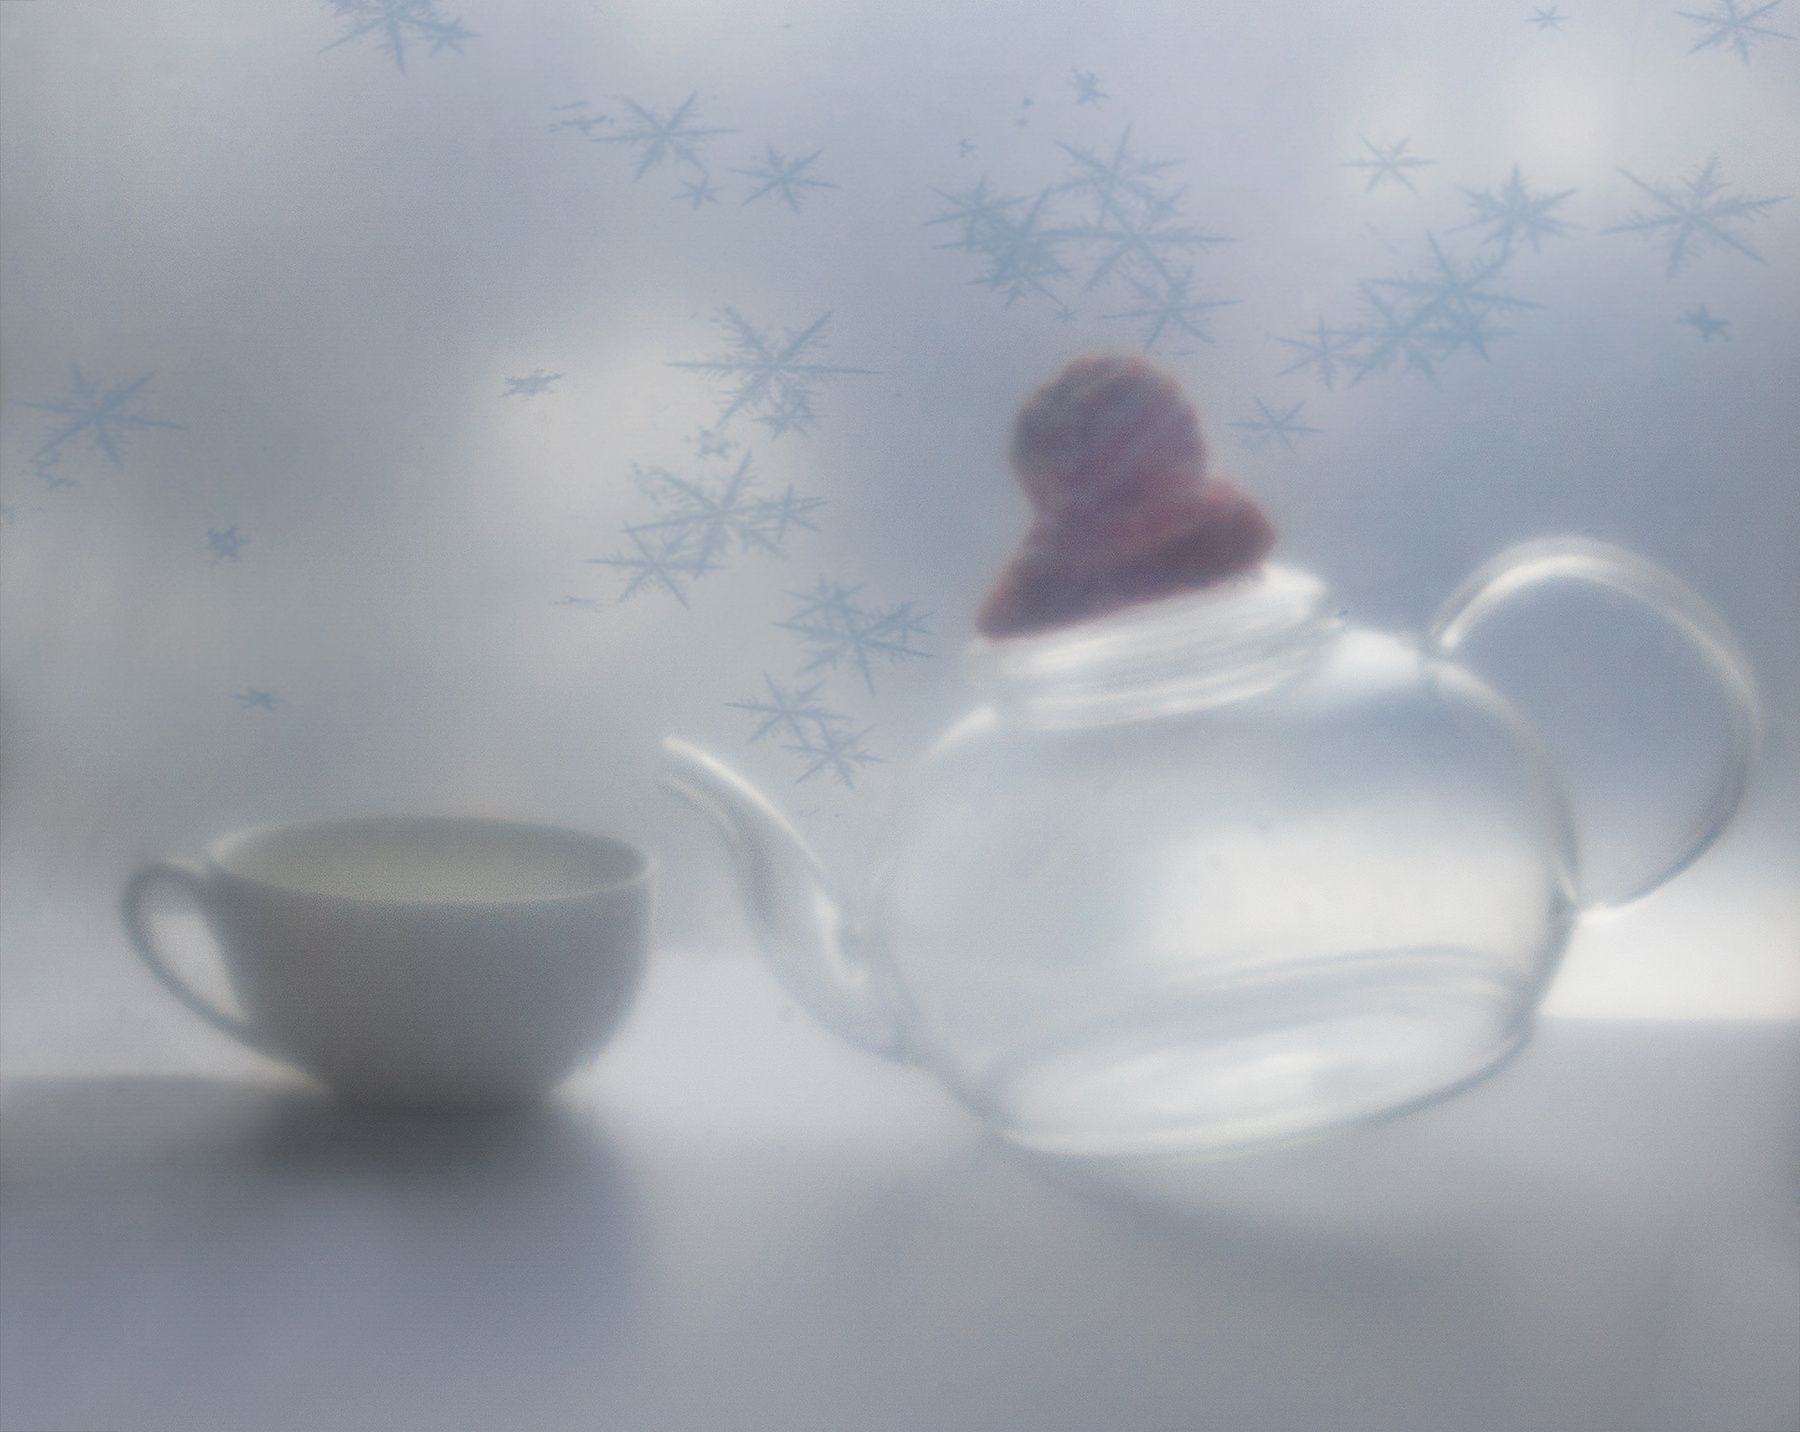 Зимний чаёк.) Предметная фотосъёмка чайник бокал стекло прозрачность